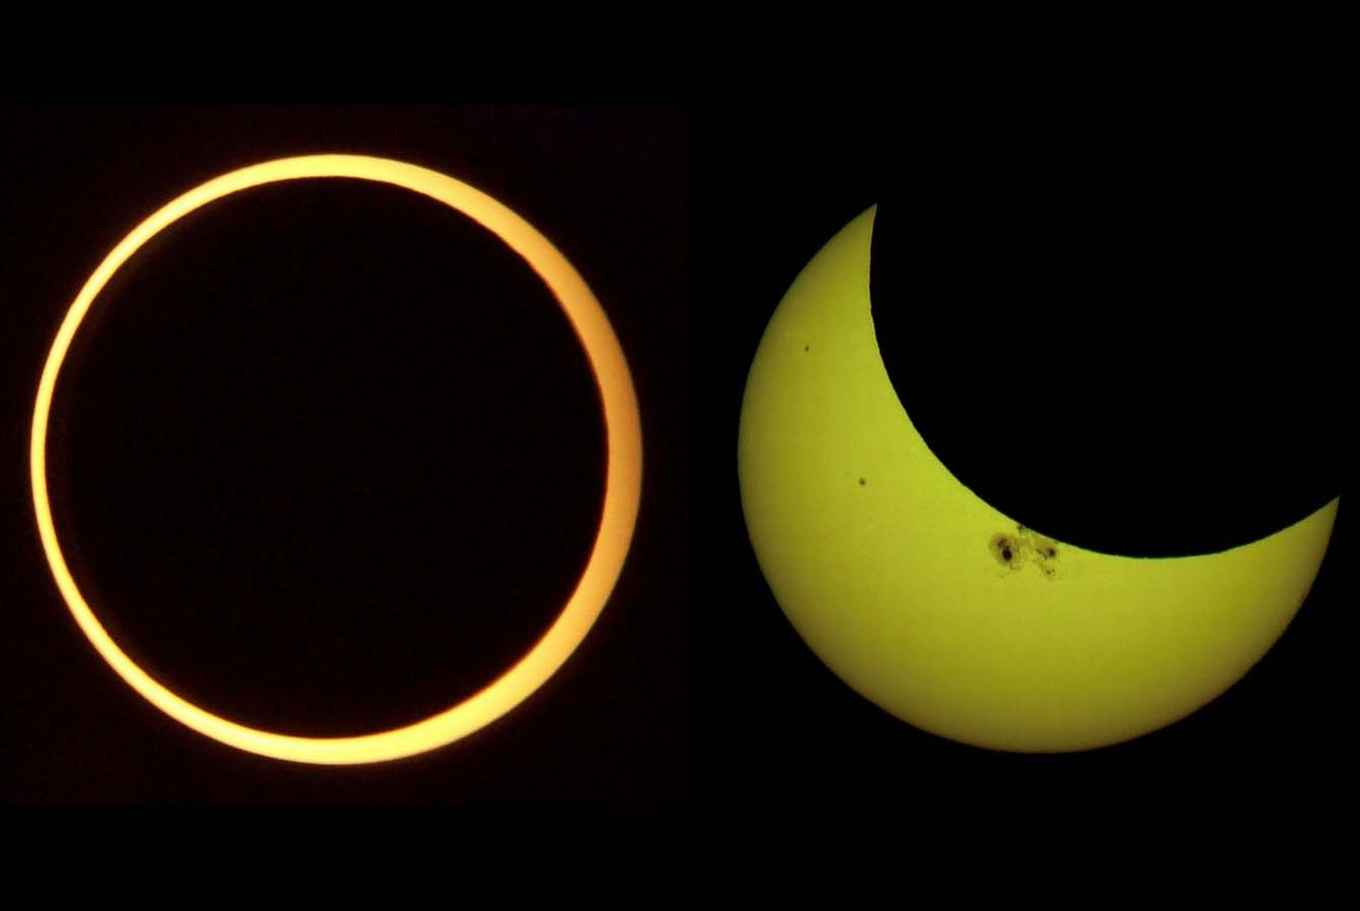 Afbeelding 1: ringvormige zonsverduistering (links) en gedeeltelijke zonsverduistering (rechts).